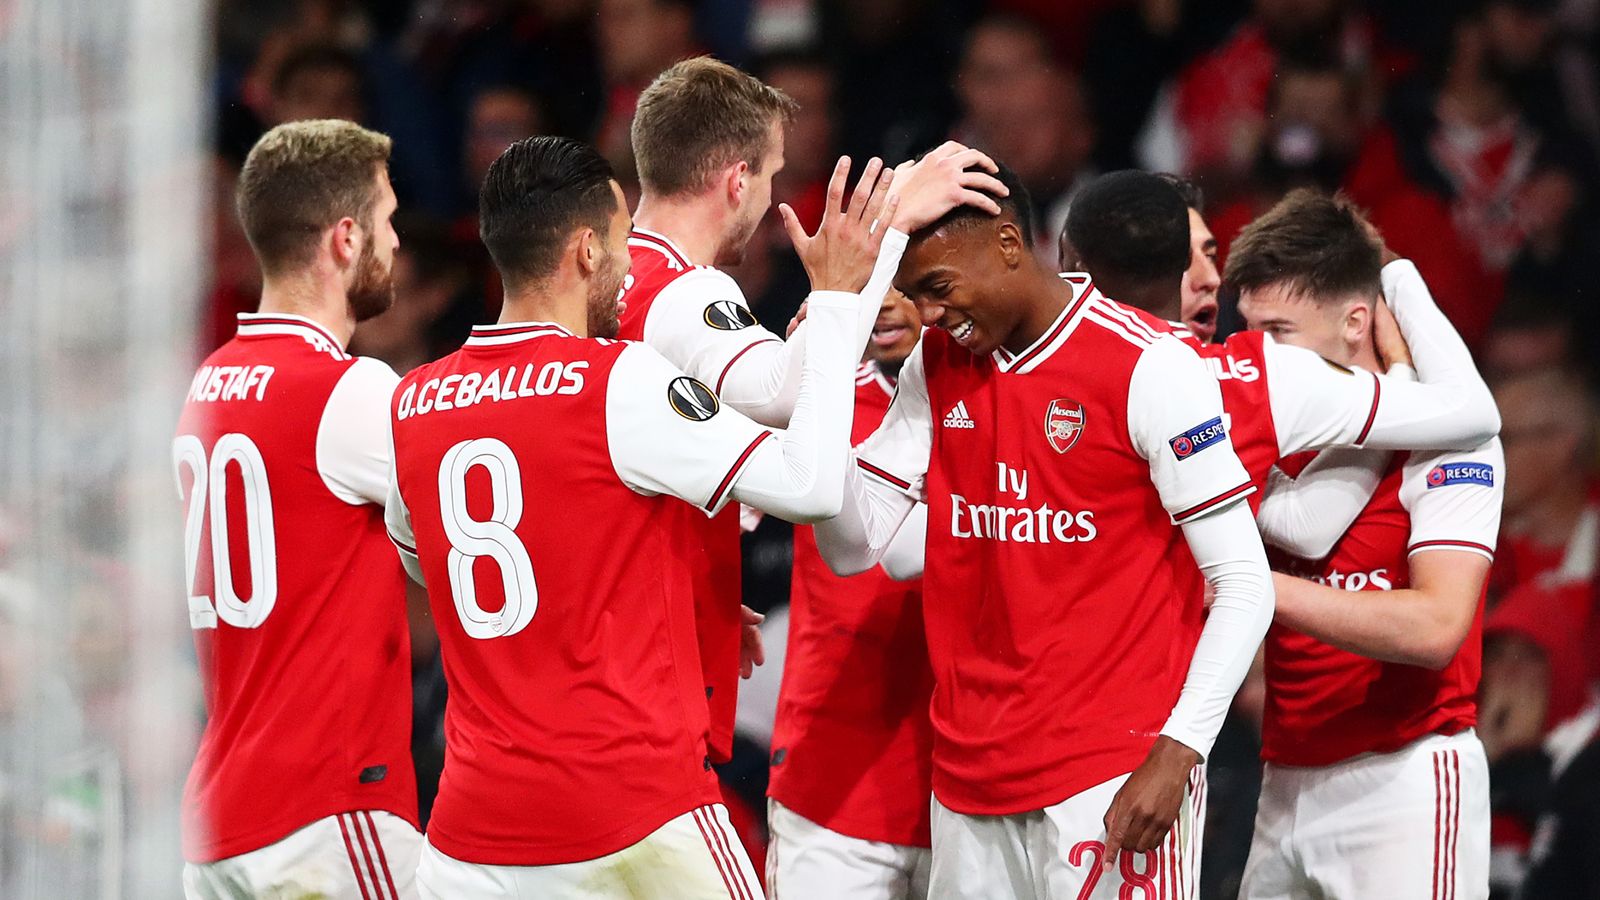 Arsenal 4 - 0 S Liege - Match Report & Highlights